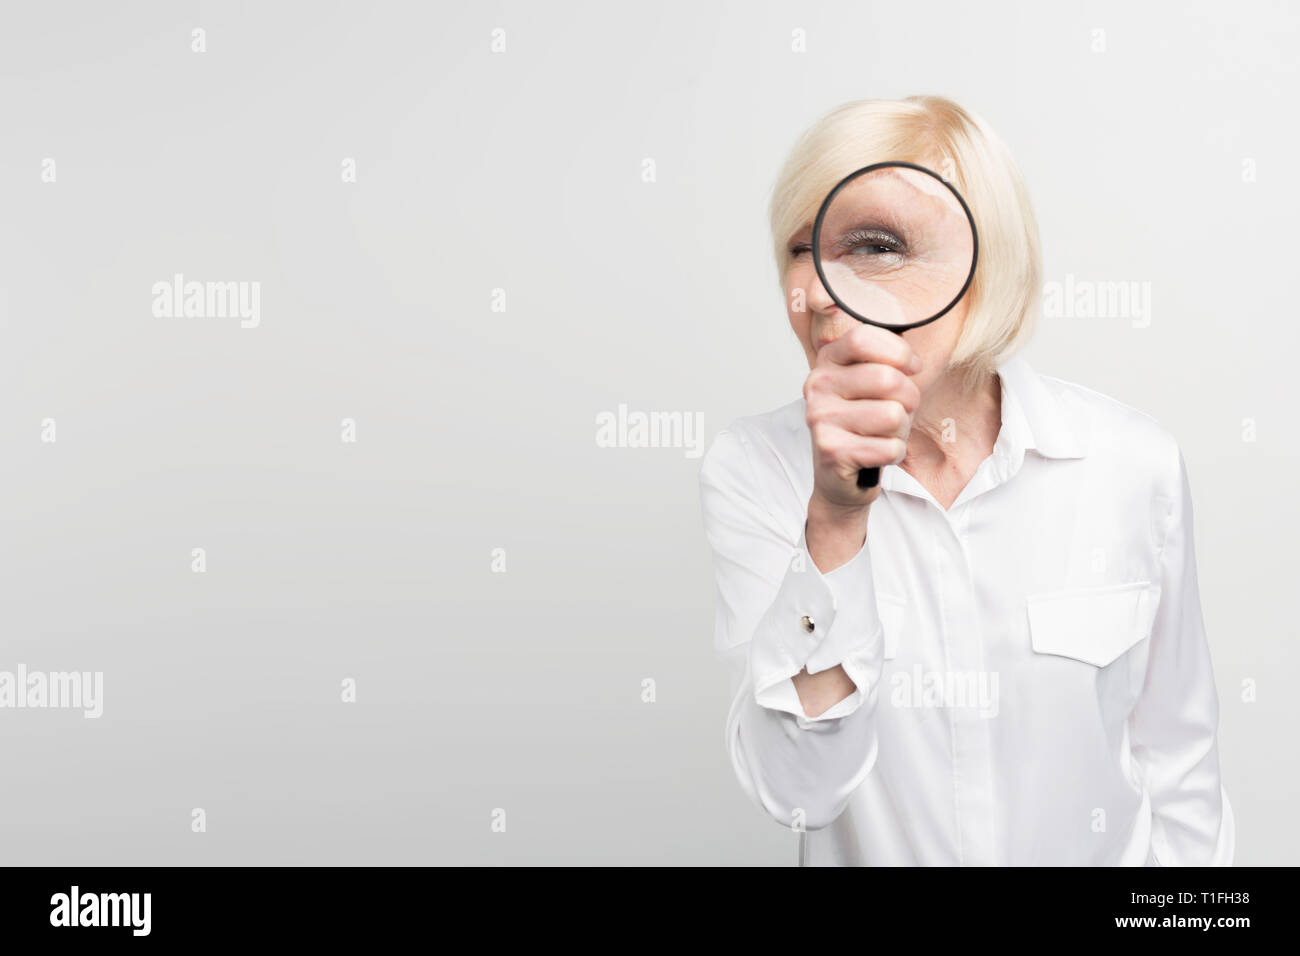 Ein Bild der weißhaarige Frau, die auf der rechten Seite des Rahmens und geradeaus Blick durch die Lupe. Auf weissem Hintergrund. Stockfoto